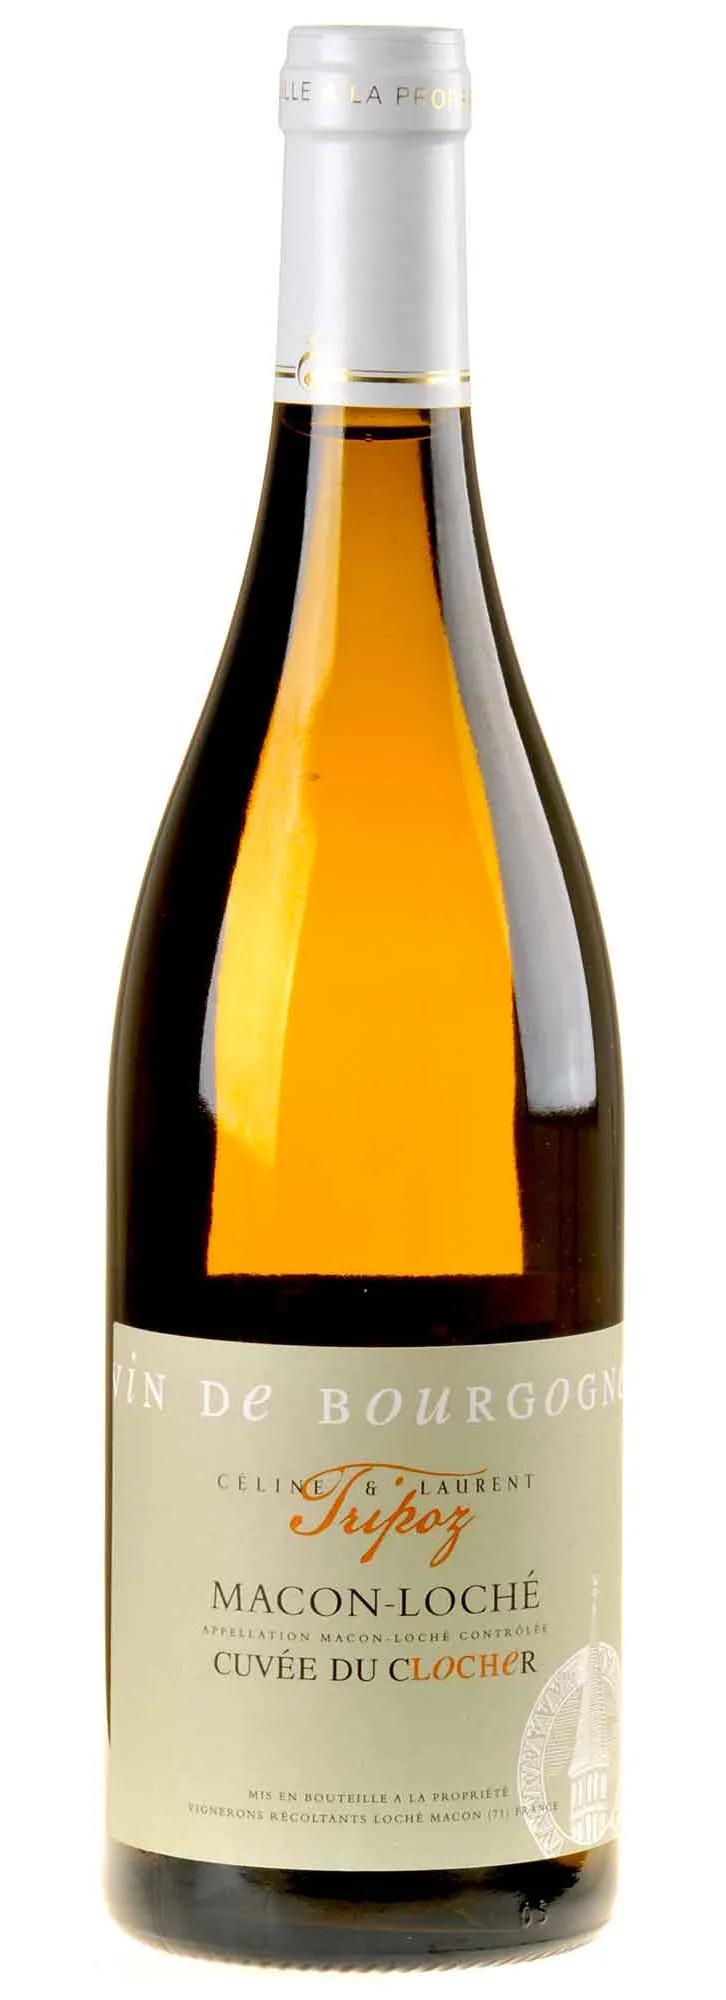 Bottle of Celine & Laurent Tripoz Cuvée du Clocher Mâcon-Lochéwith label visible